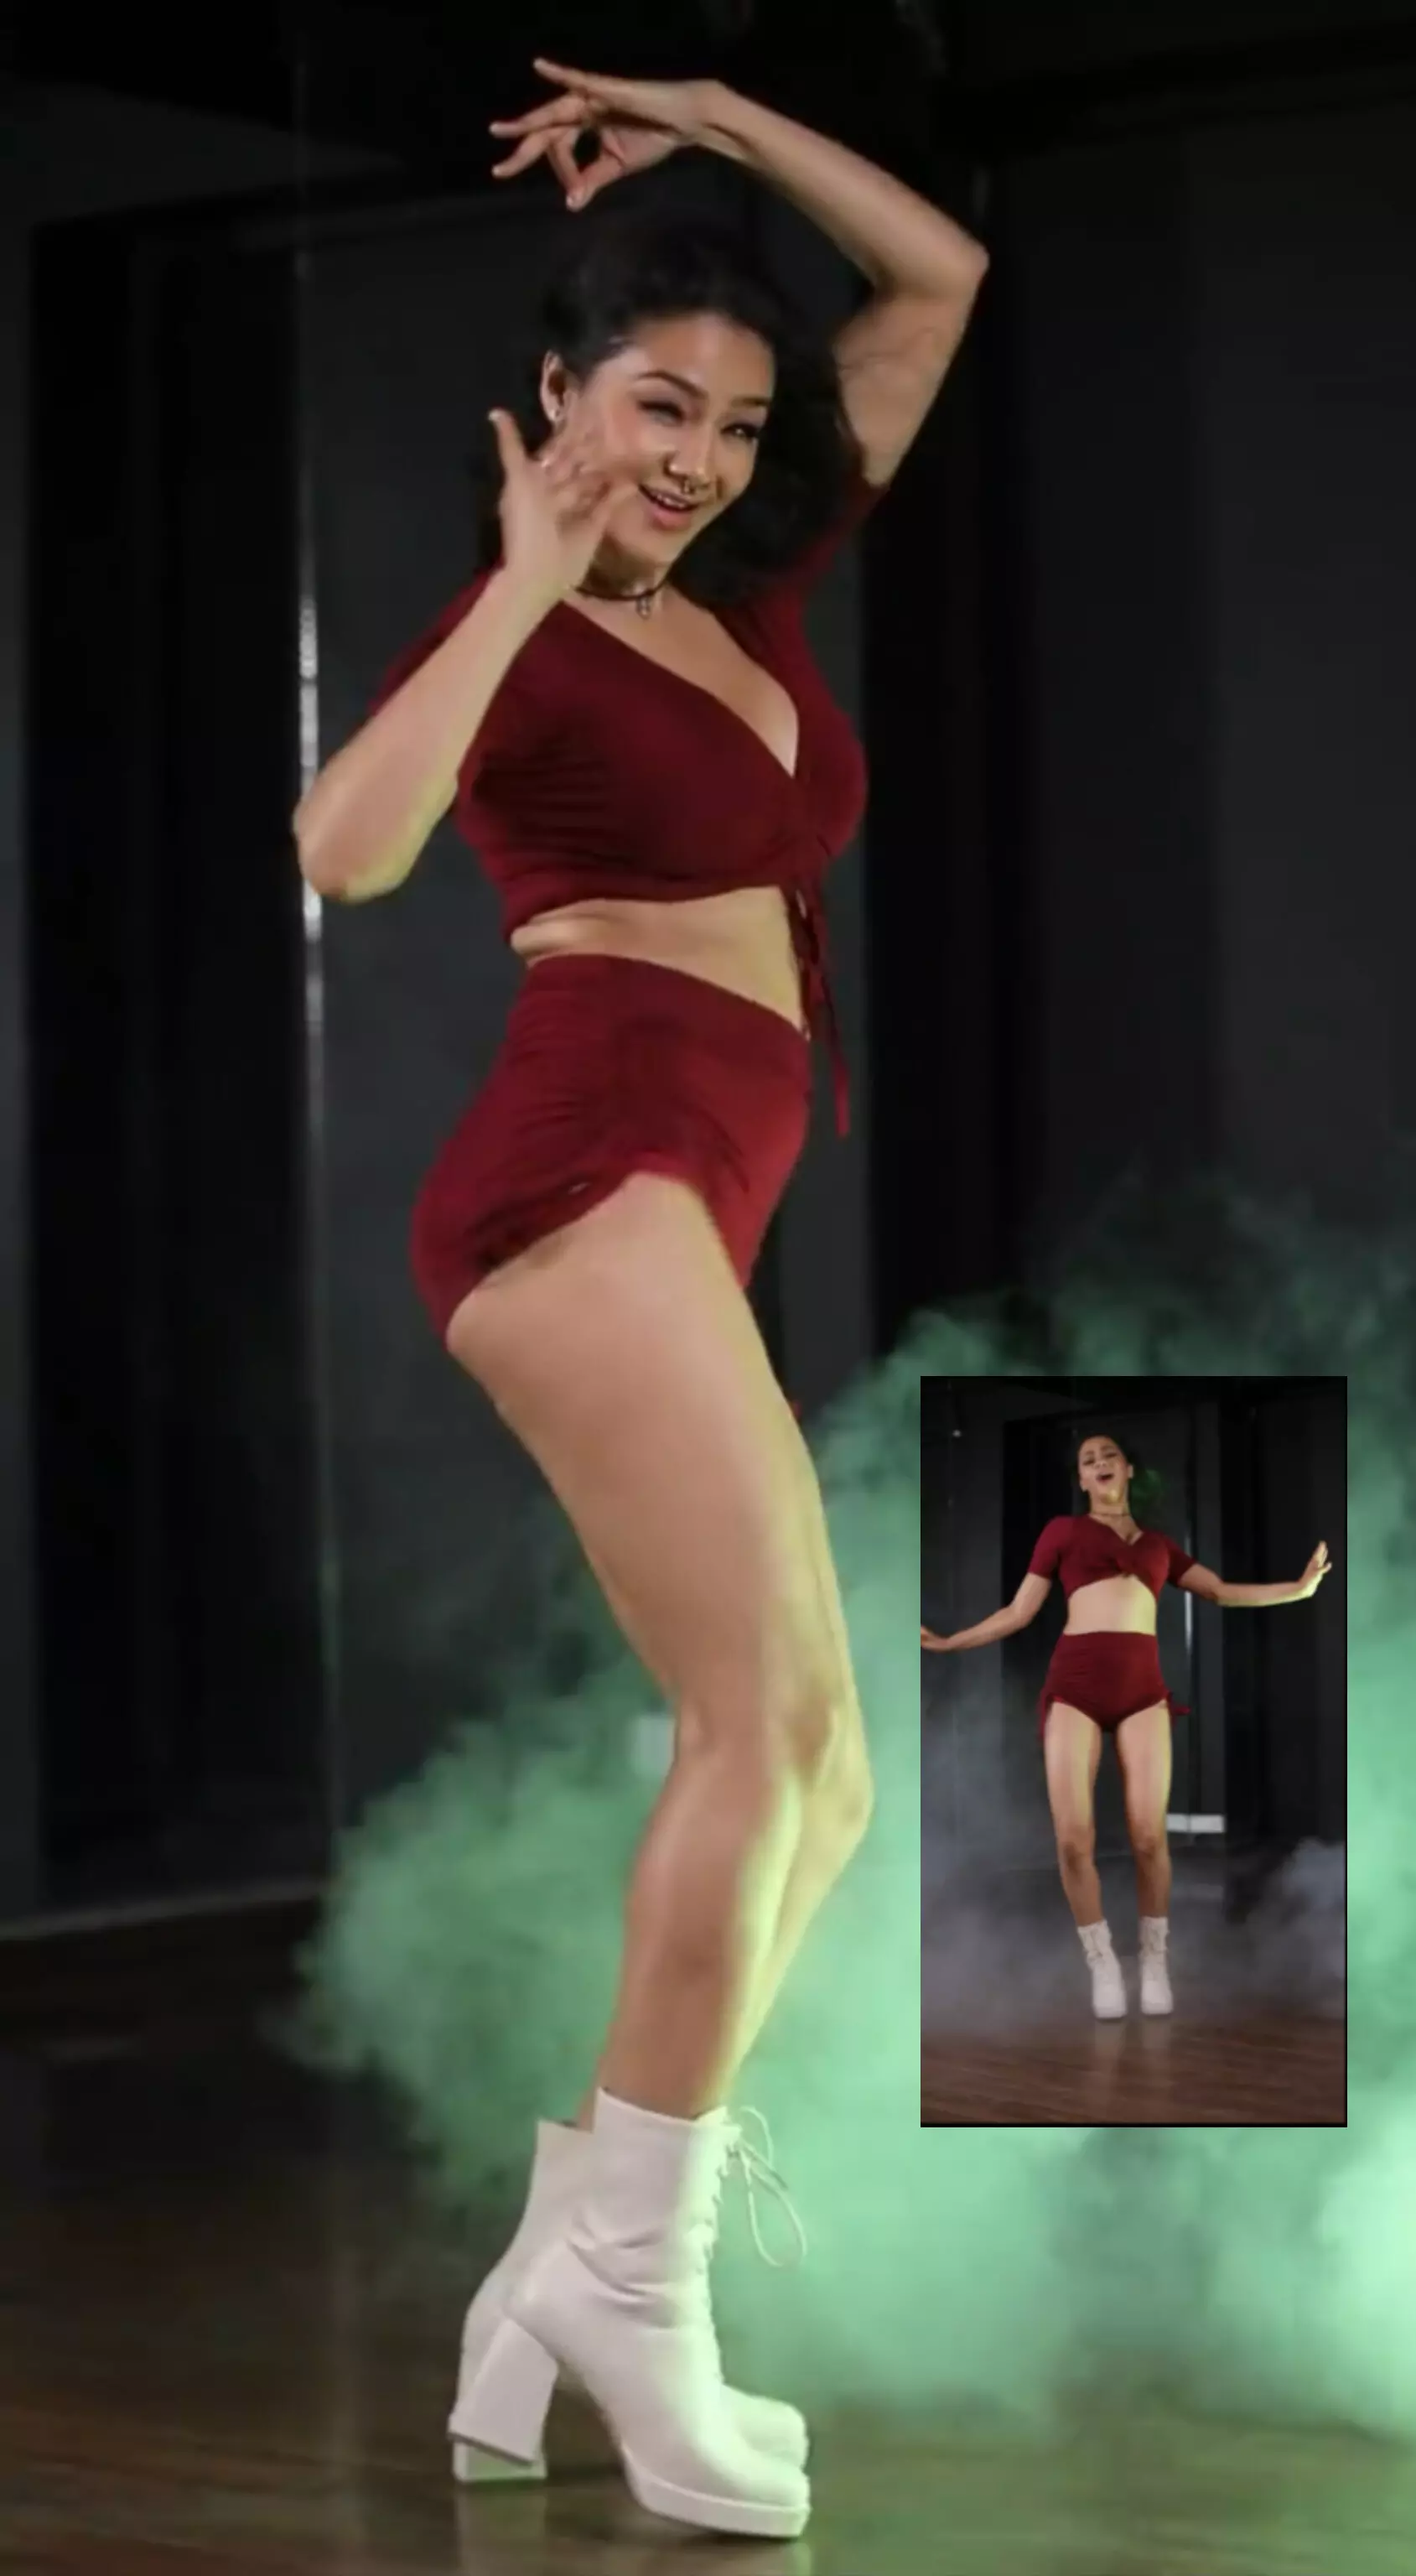 अभिनेत्री नम्रता मल्ला ने Yimmi Yimmi गाने पर डांस करते हुए वीडियो शेयर किया